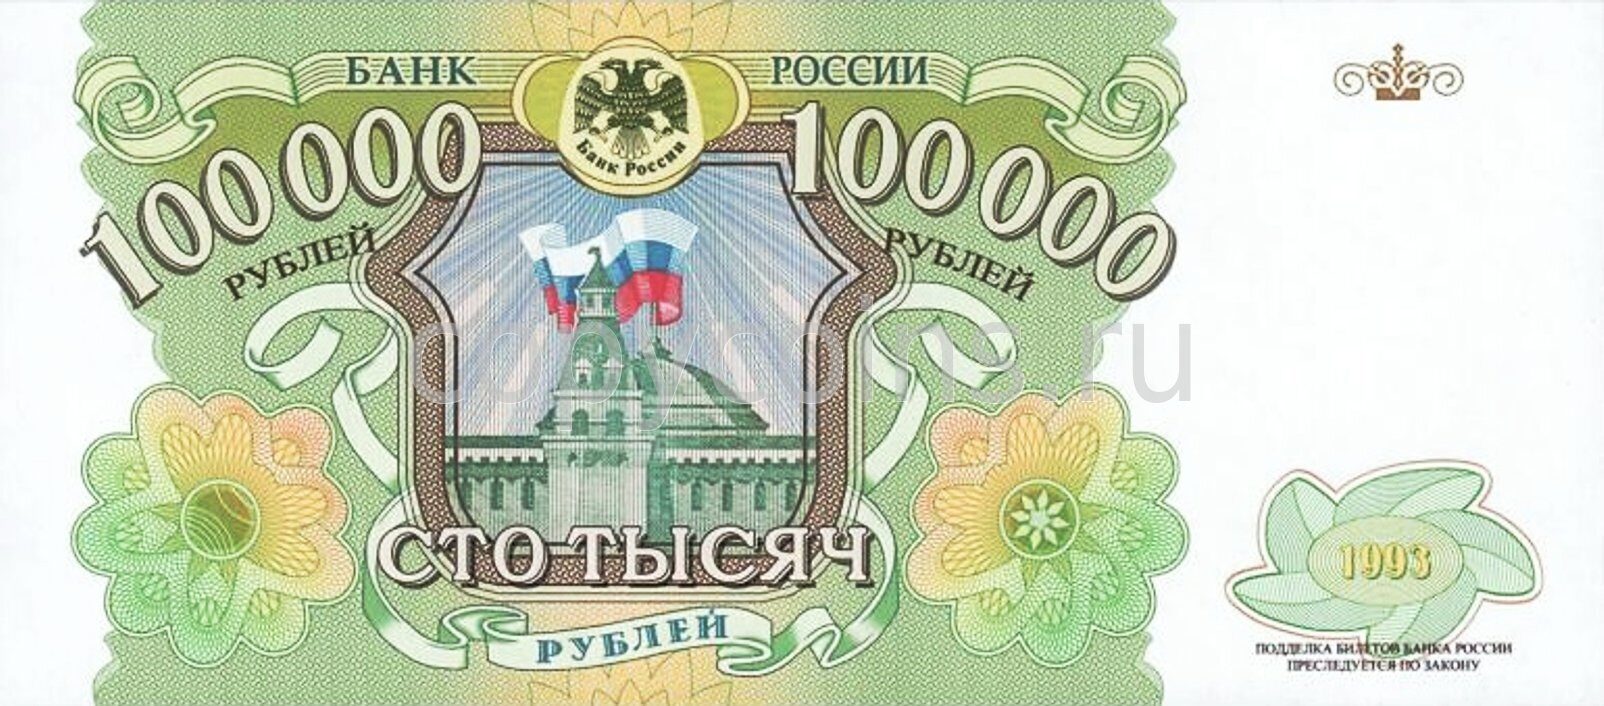 Сто банк россии. Банкнота 100000 рублей 1993. Банкнота 100000 рублей 1993 года. 100000 Рублей купюра 1993. Купюра 100000 рублей.